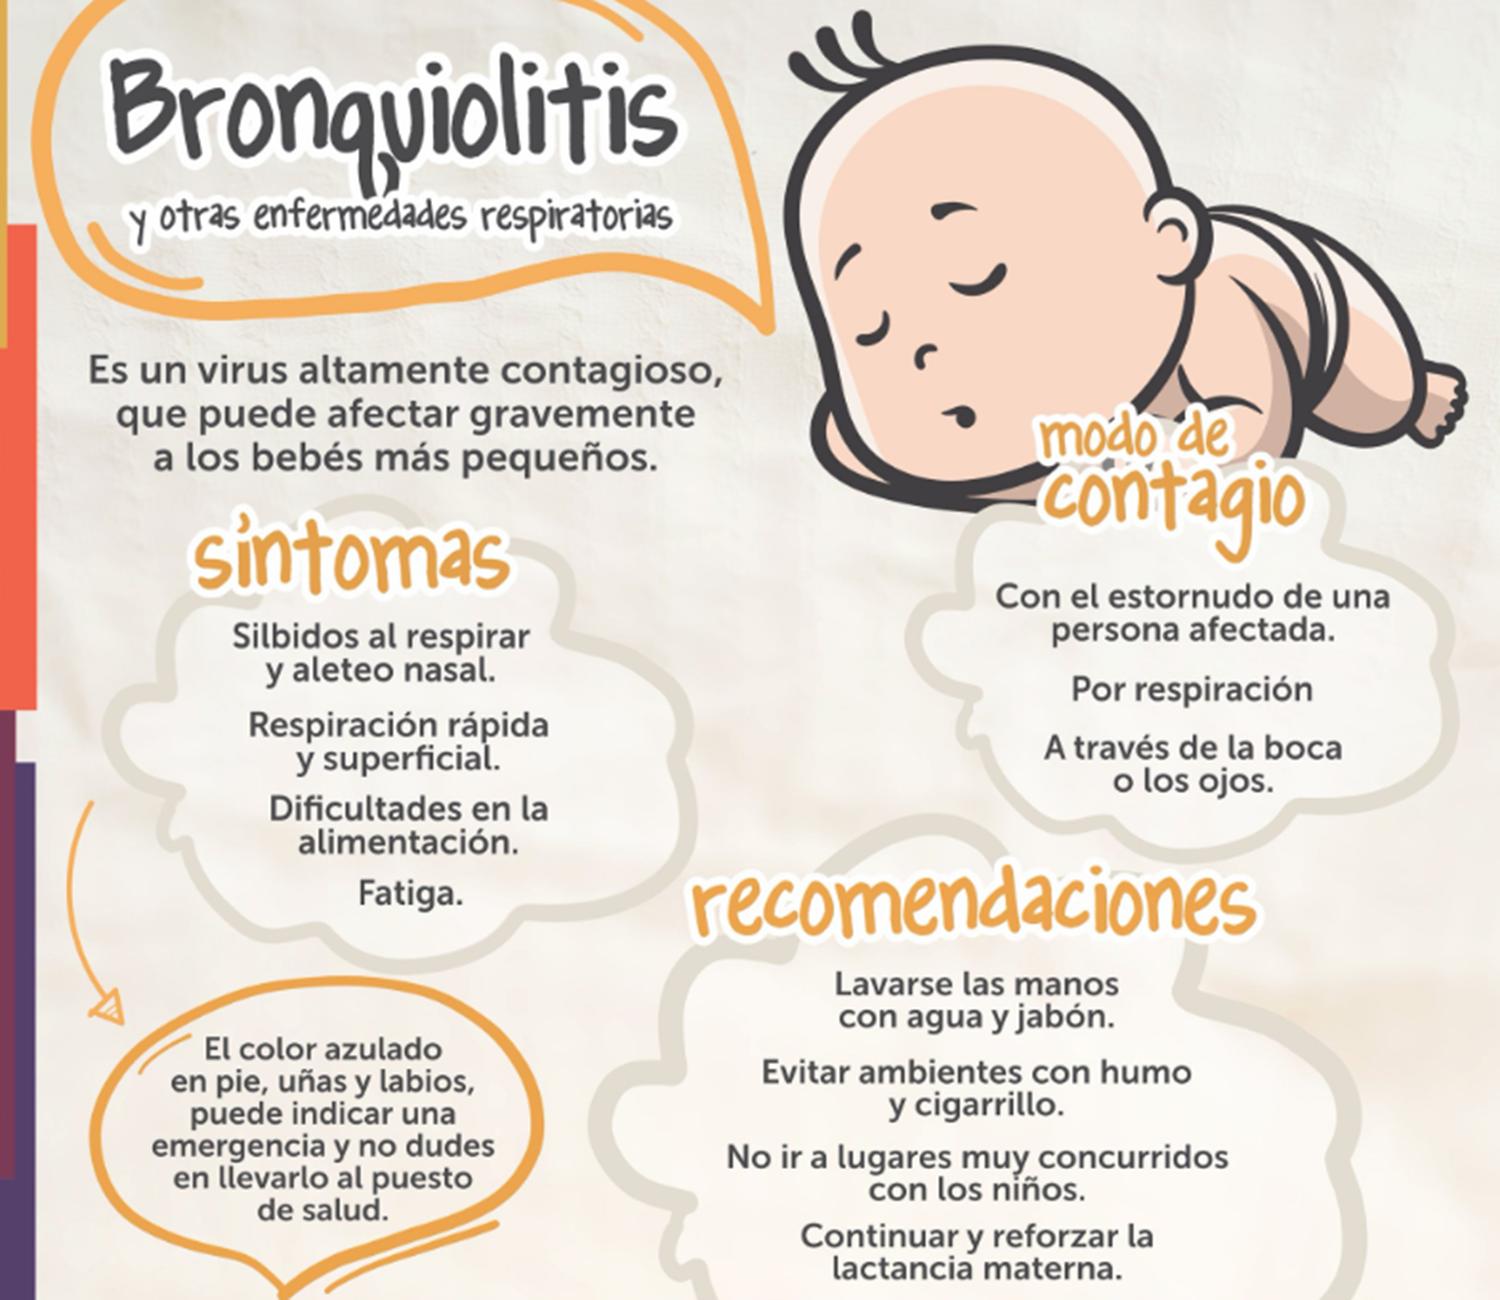 Más de 630 menores de dos años contraen bronquiolitis por día en la Argentina